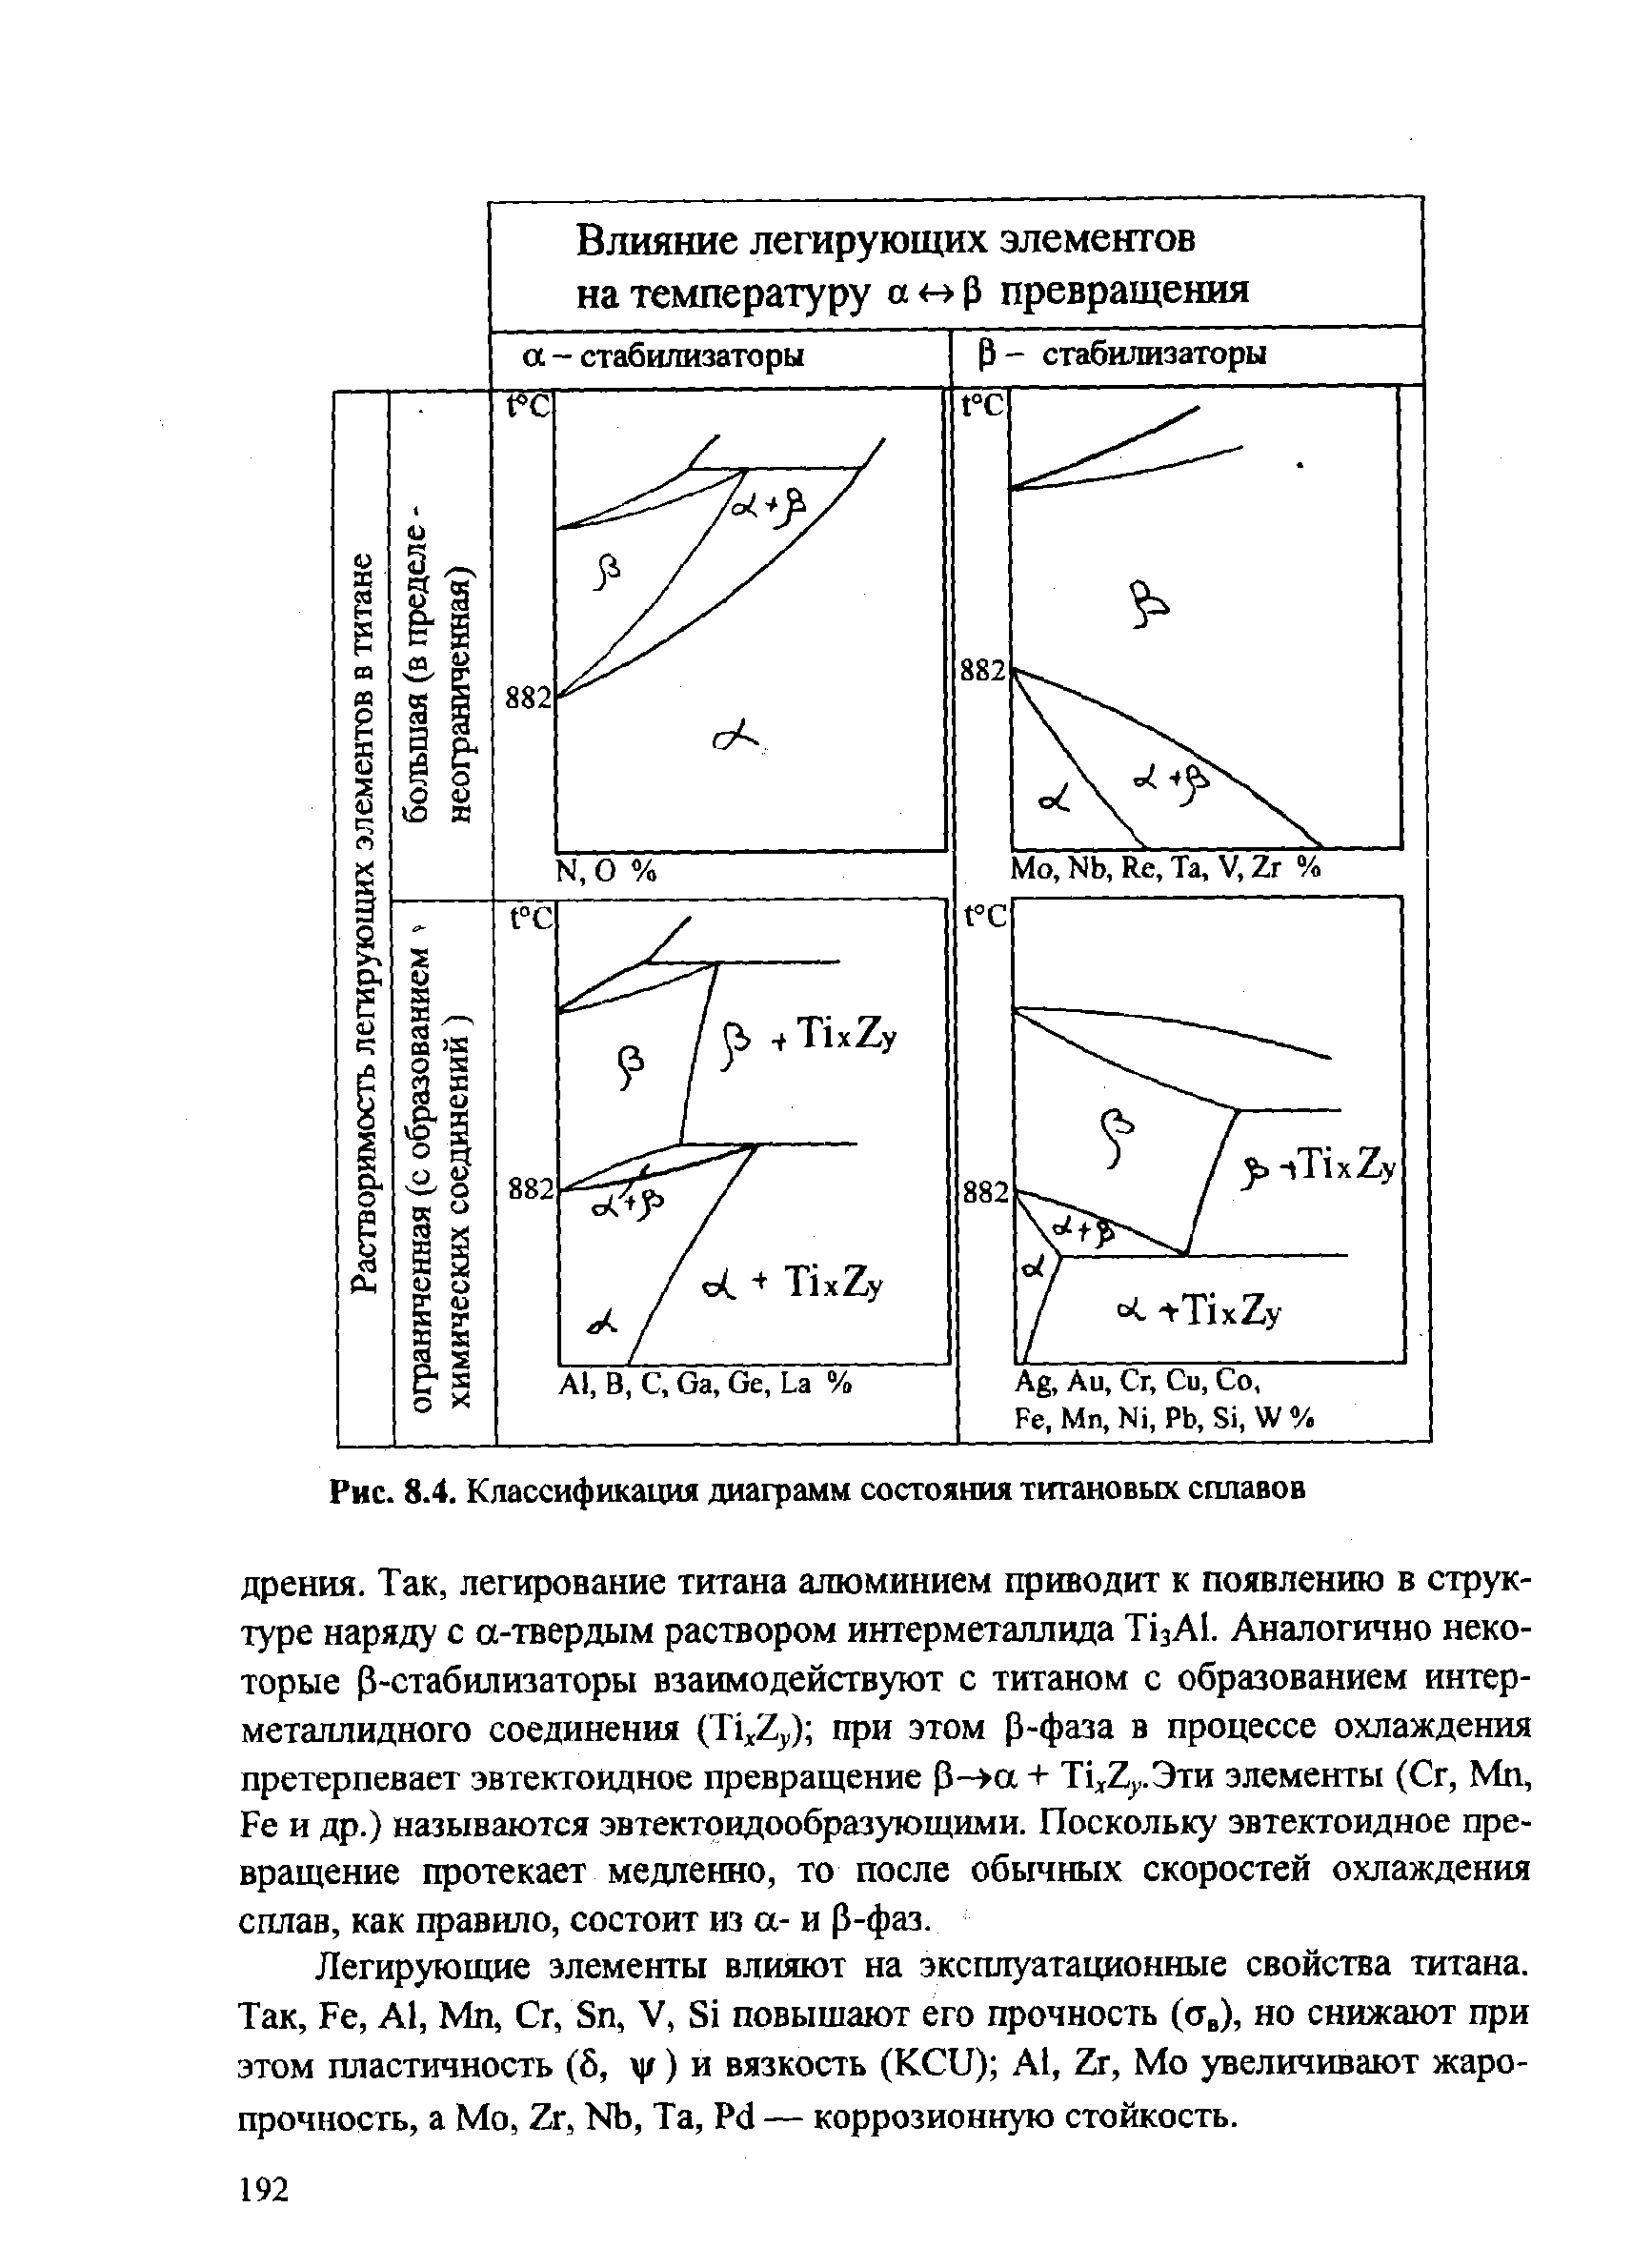 Рис. 8.4. Классификация диаграмм состояния титановых сплавов
